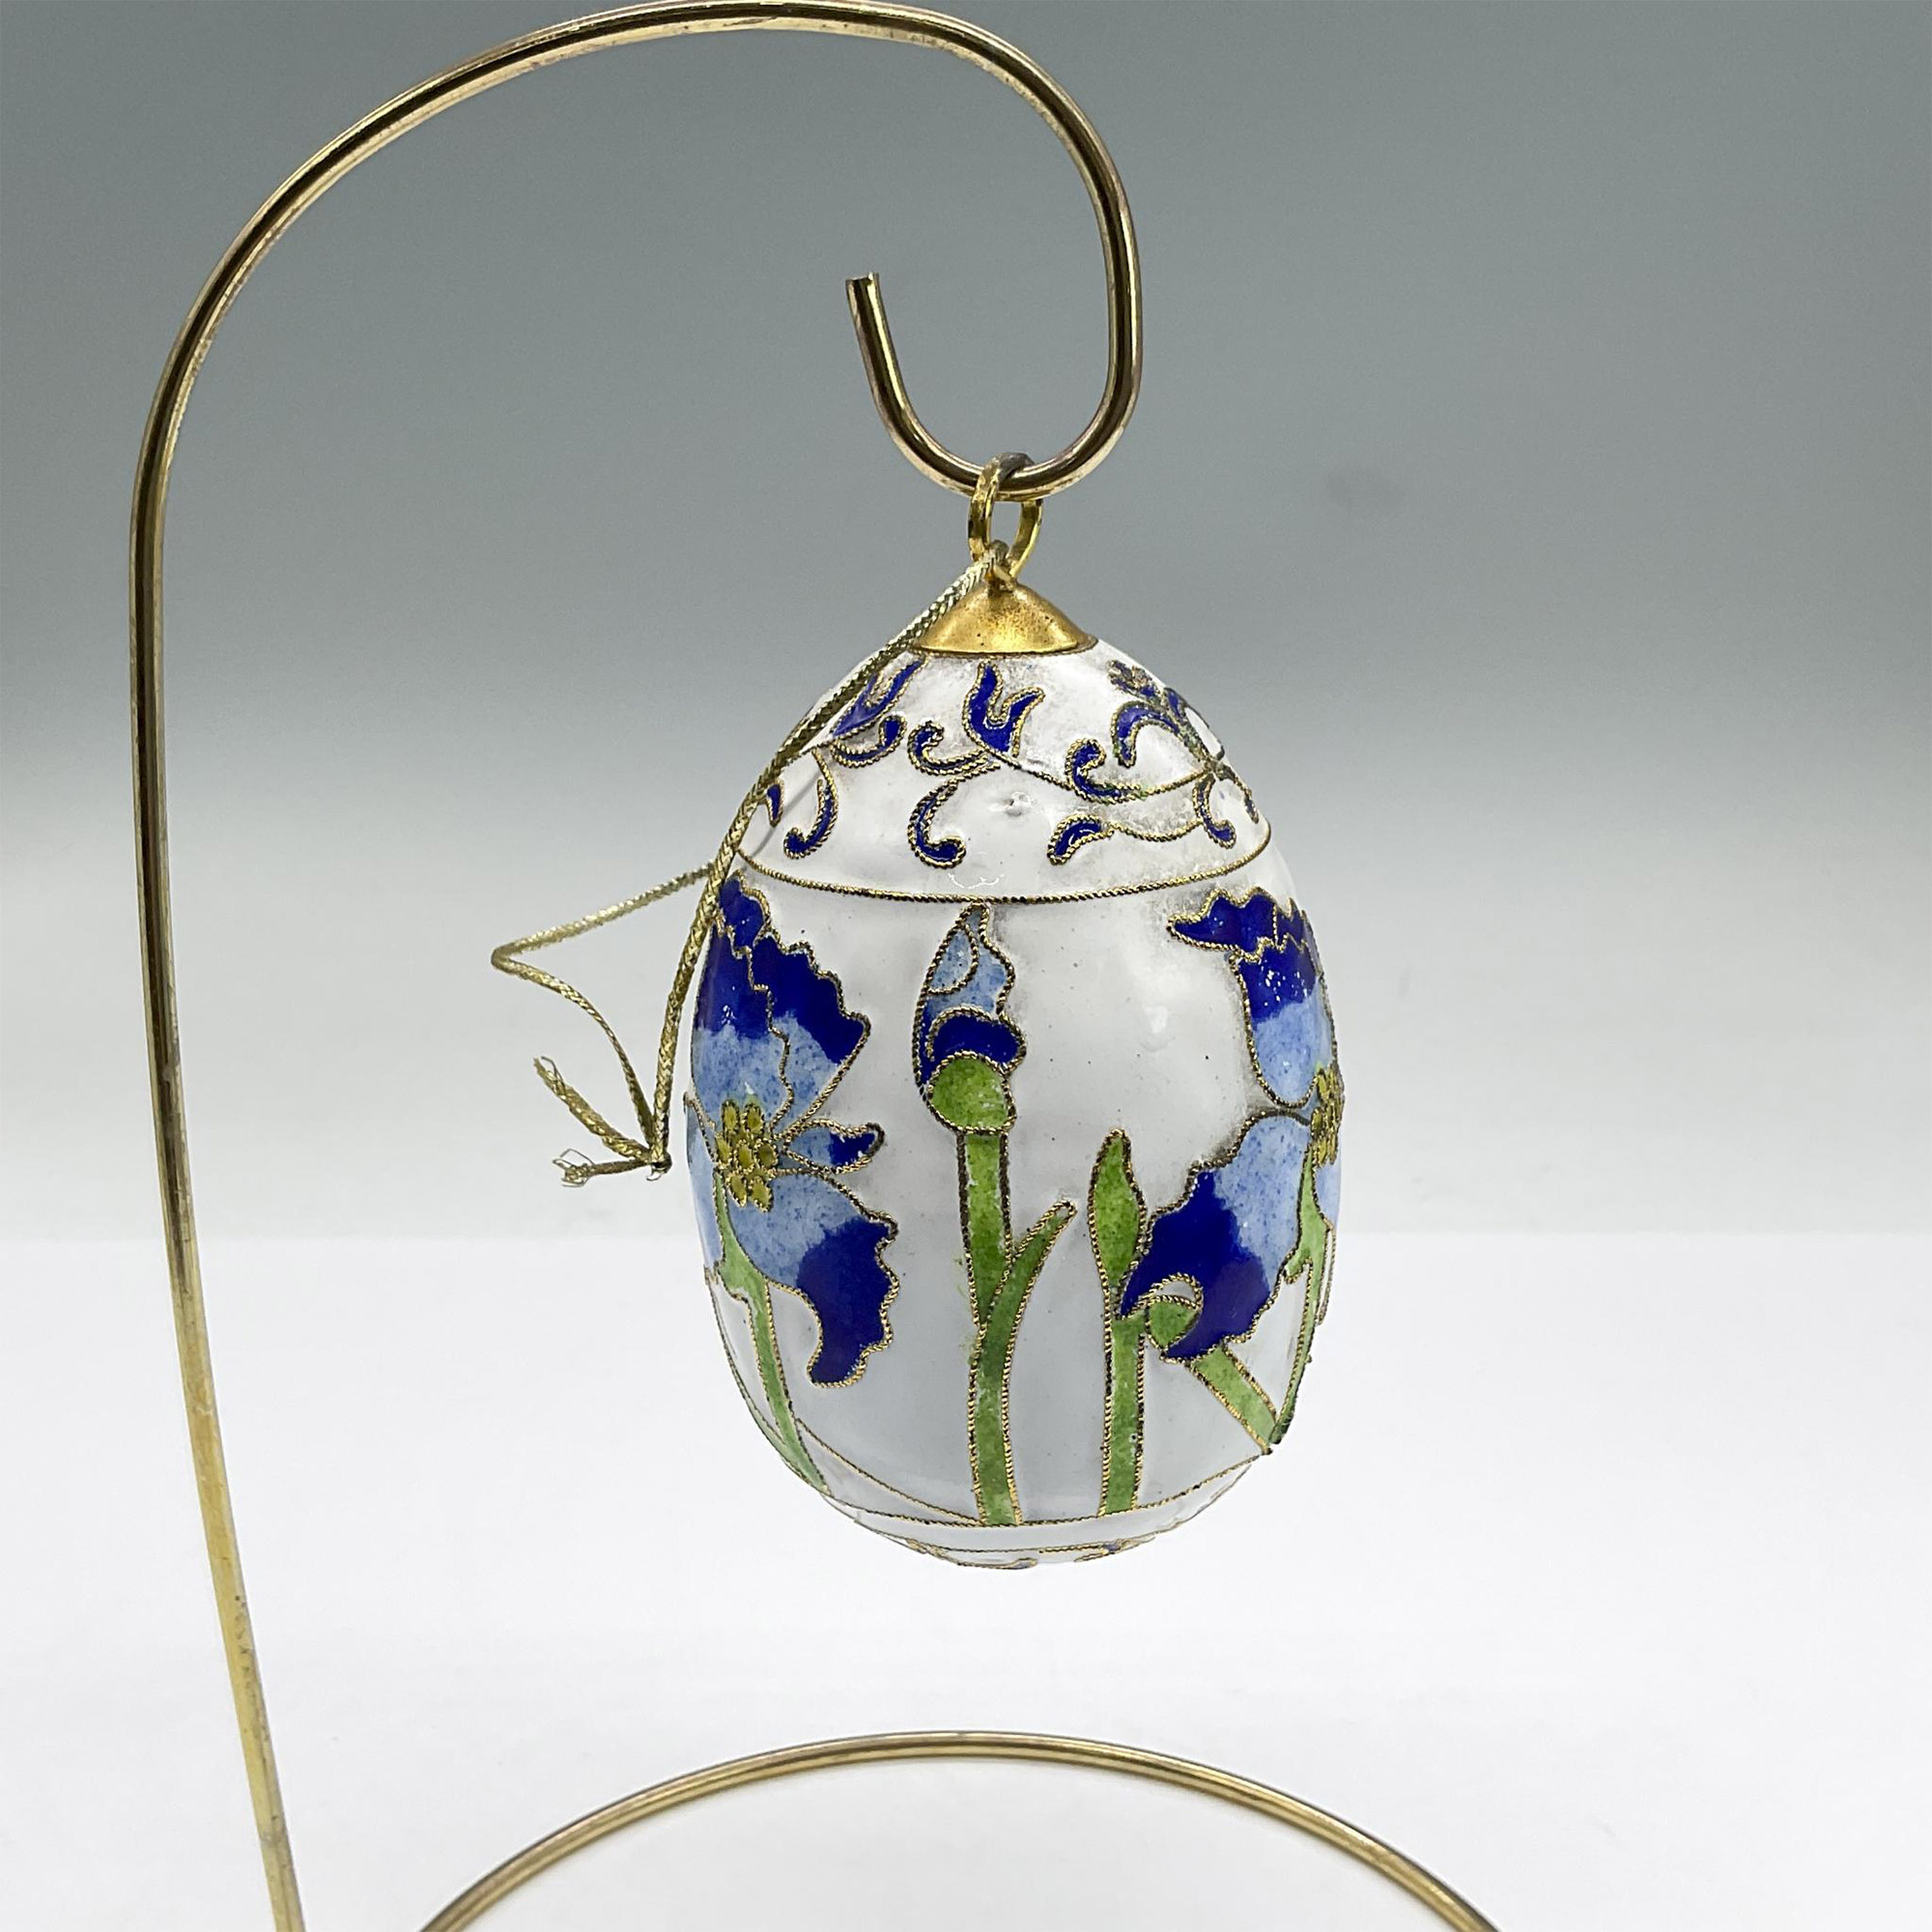 Vintage Cloisonne Enamel Egg Ornament, Blue Flowers - Image 2 of 3